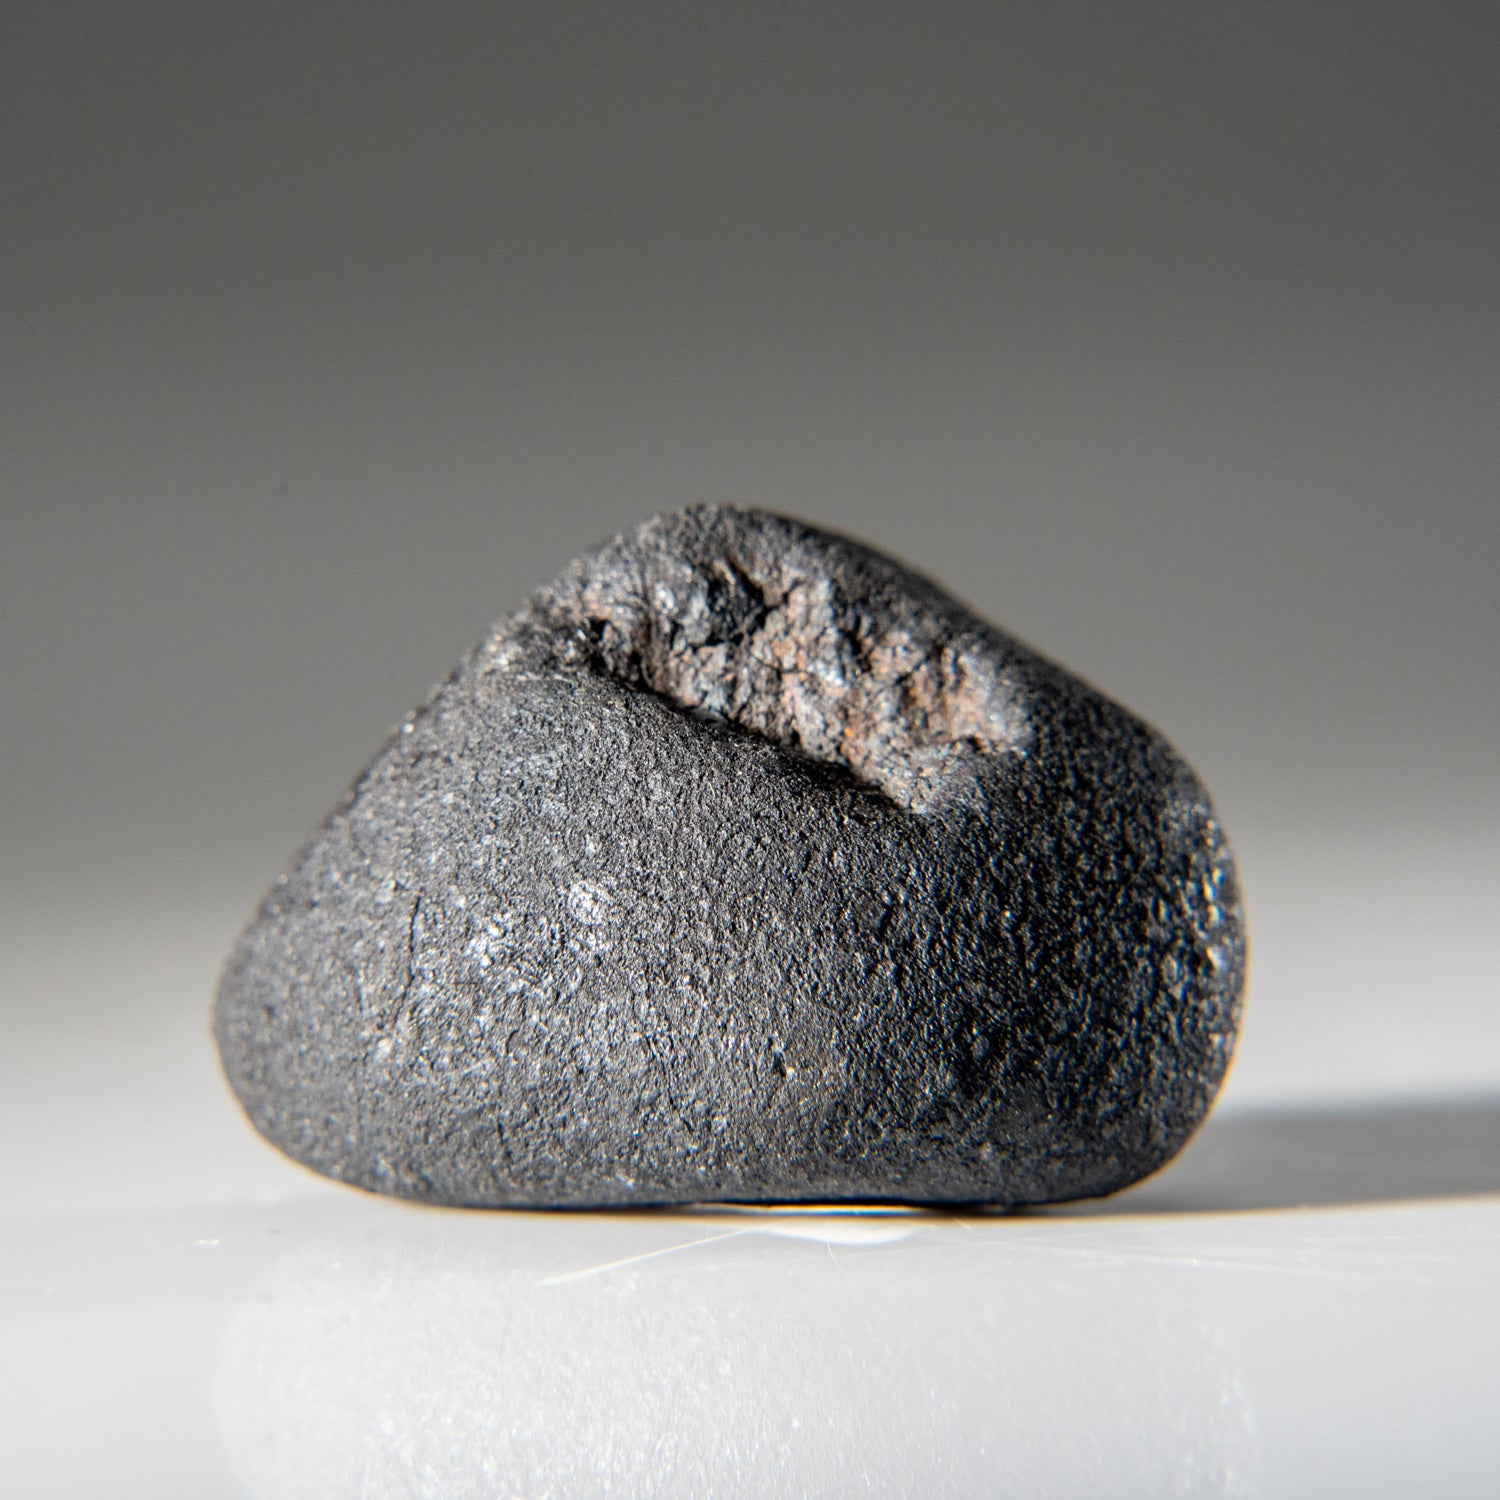 Genuine Chelyabinsk Meteorite (20.5 grams)